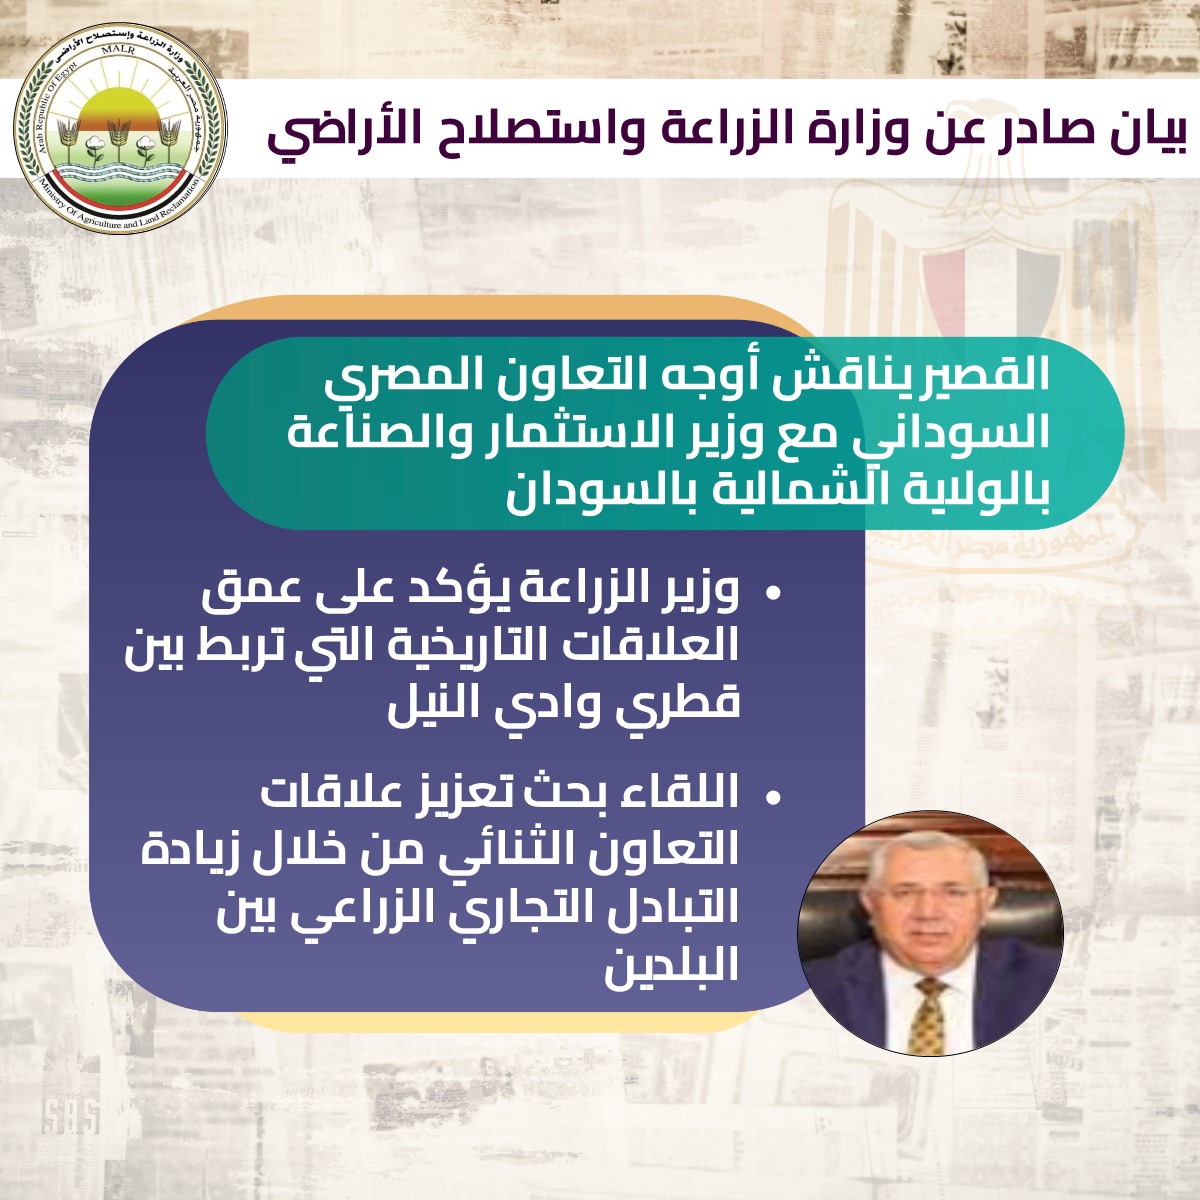 التعاون المشترك بين مصر و جمهورية السودان فى مجال الاسثتمار الزراعي